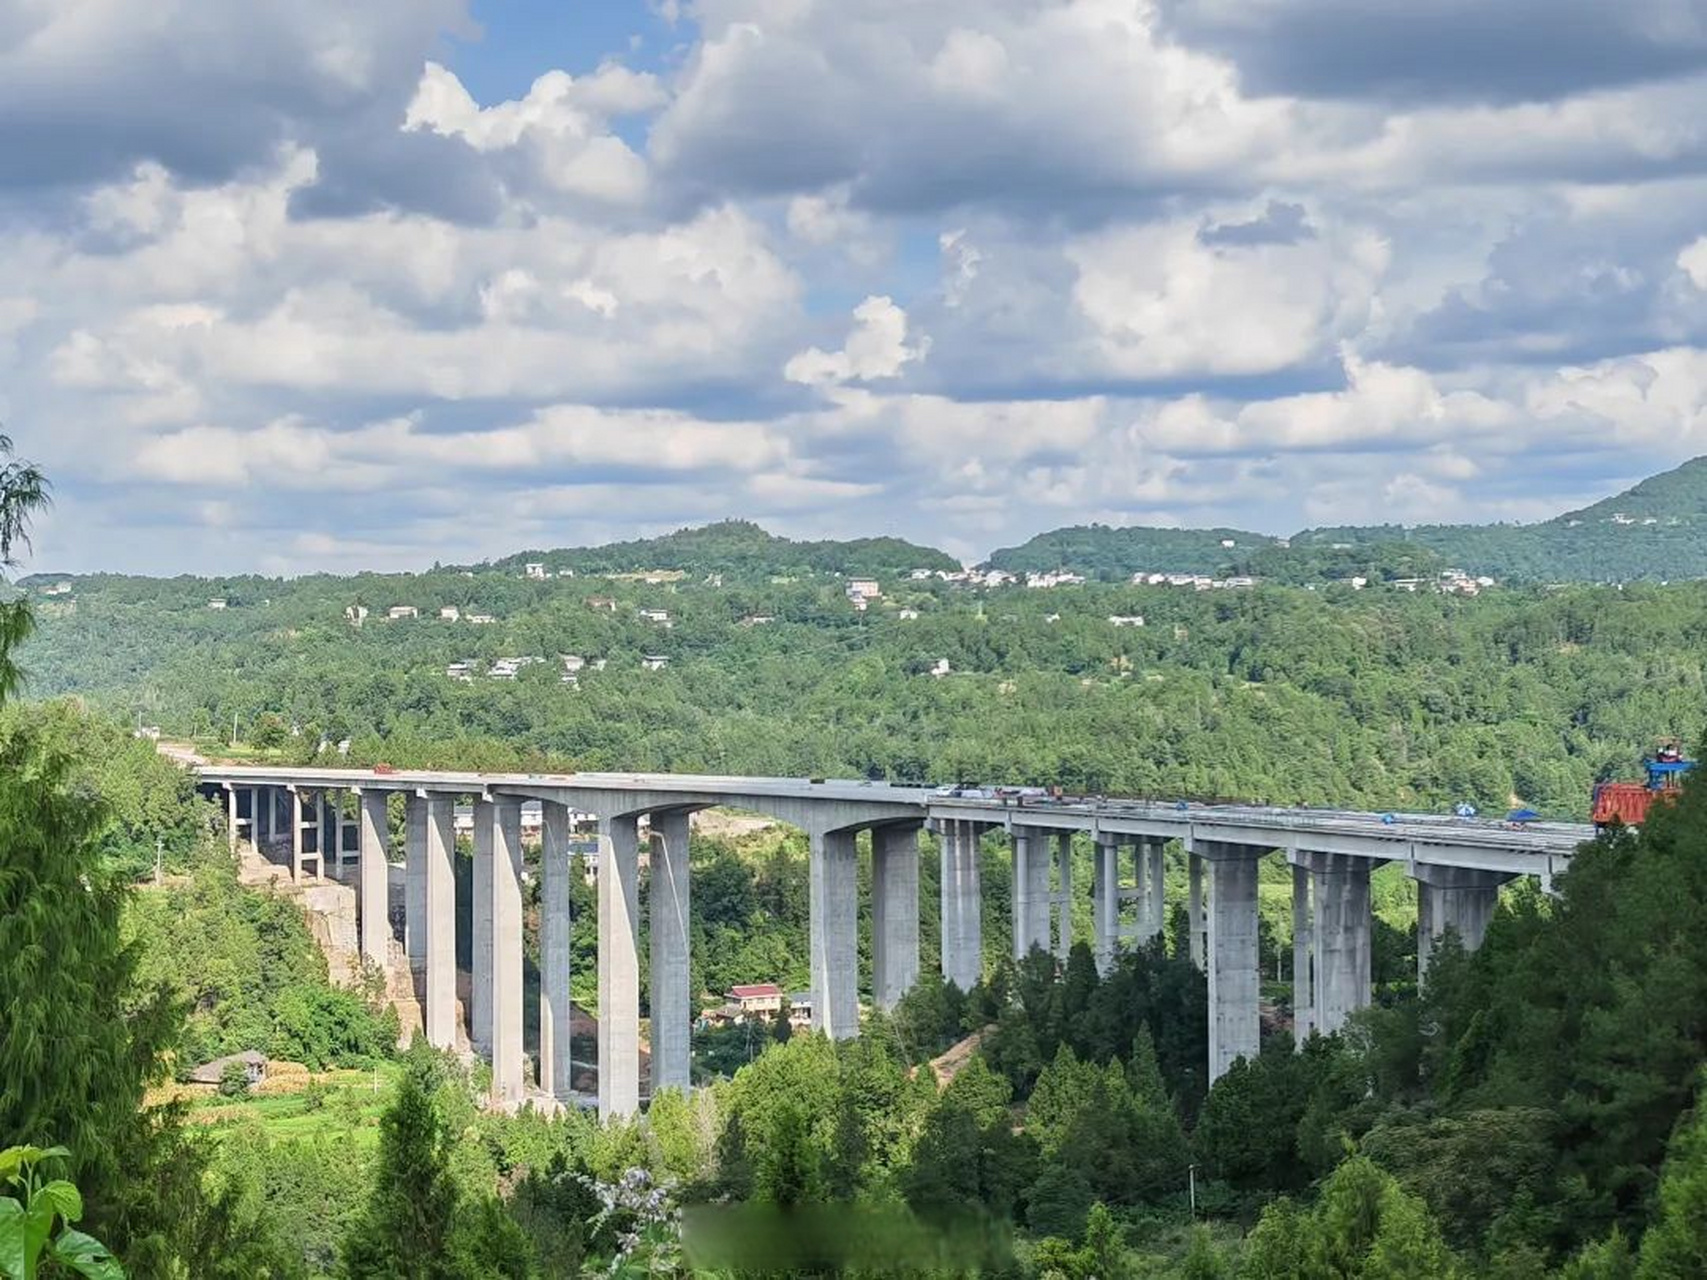 064米,是苍巴高速公路全线最高大桥和全线最难点工程